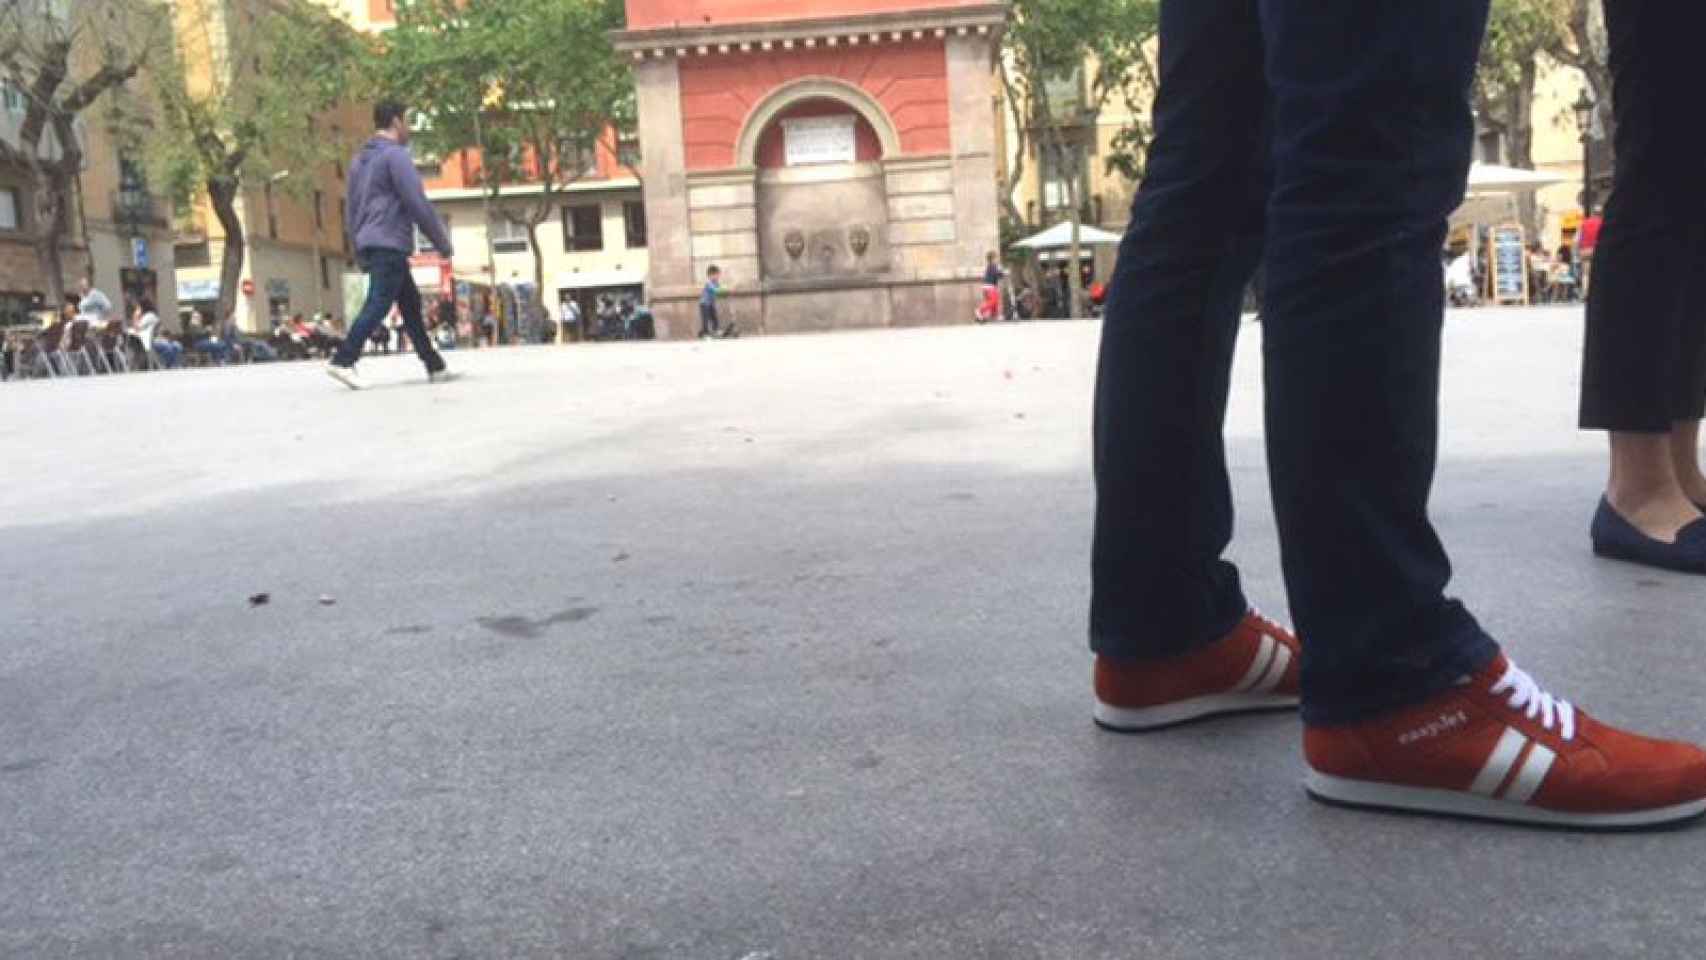 La zapatilla de easyJet vibra para guiar al turista por una ciudad que no conoce.